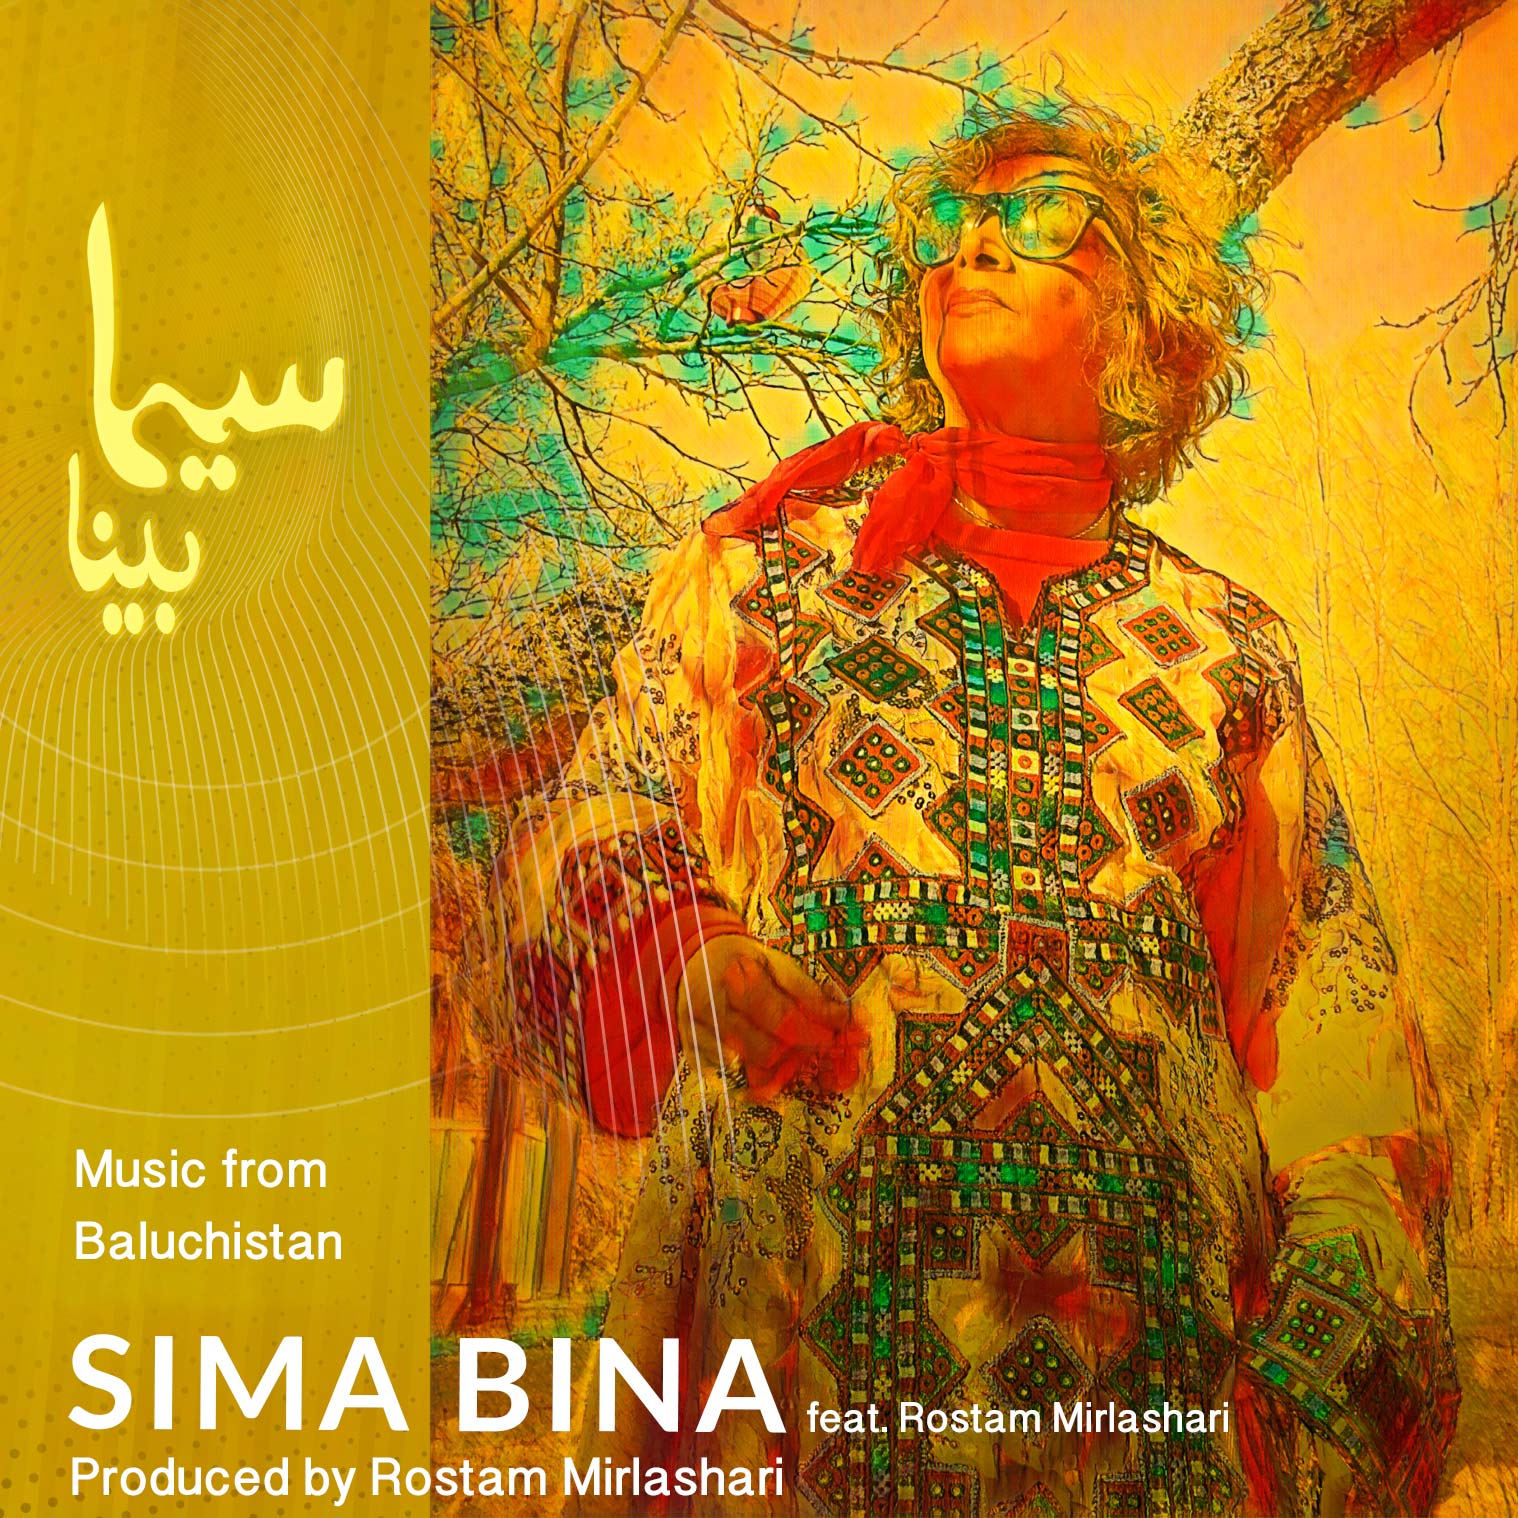 Music from Baluchistan with Sima Bina feat. Rostam Mirlashari